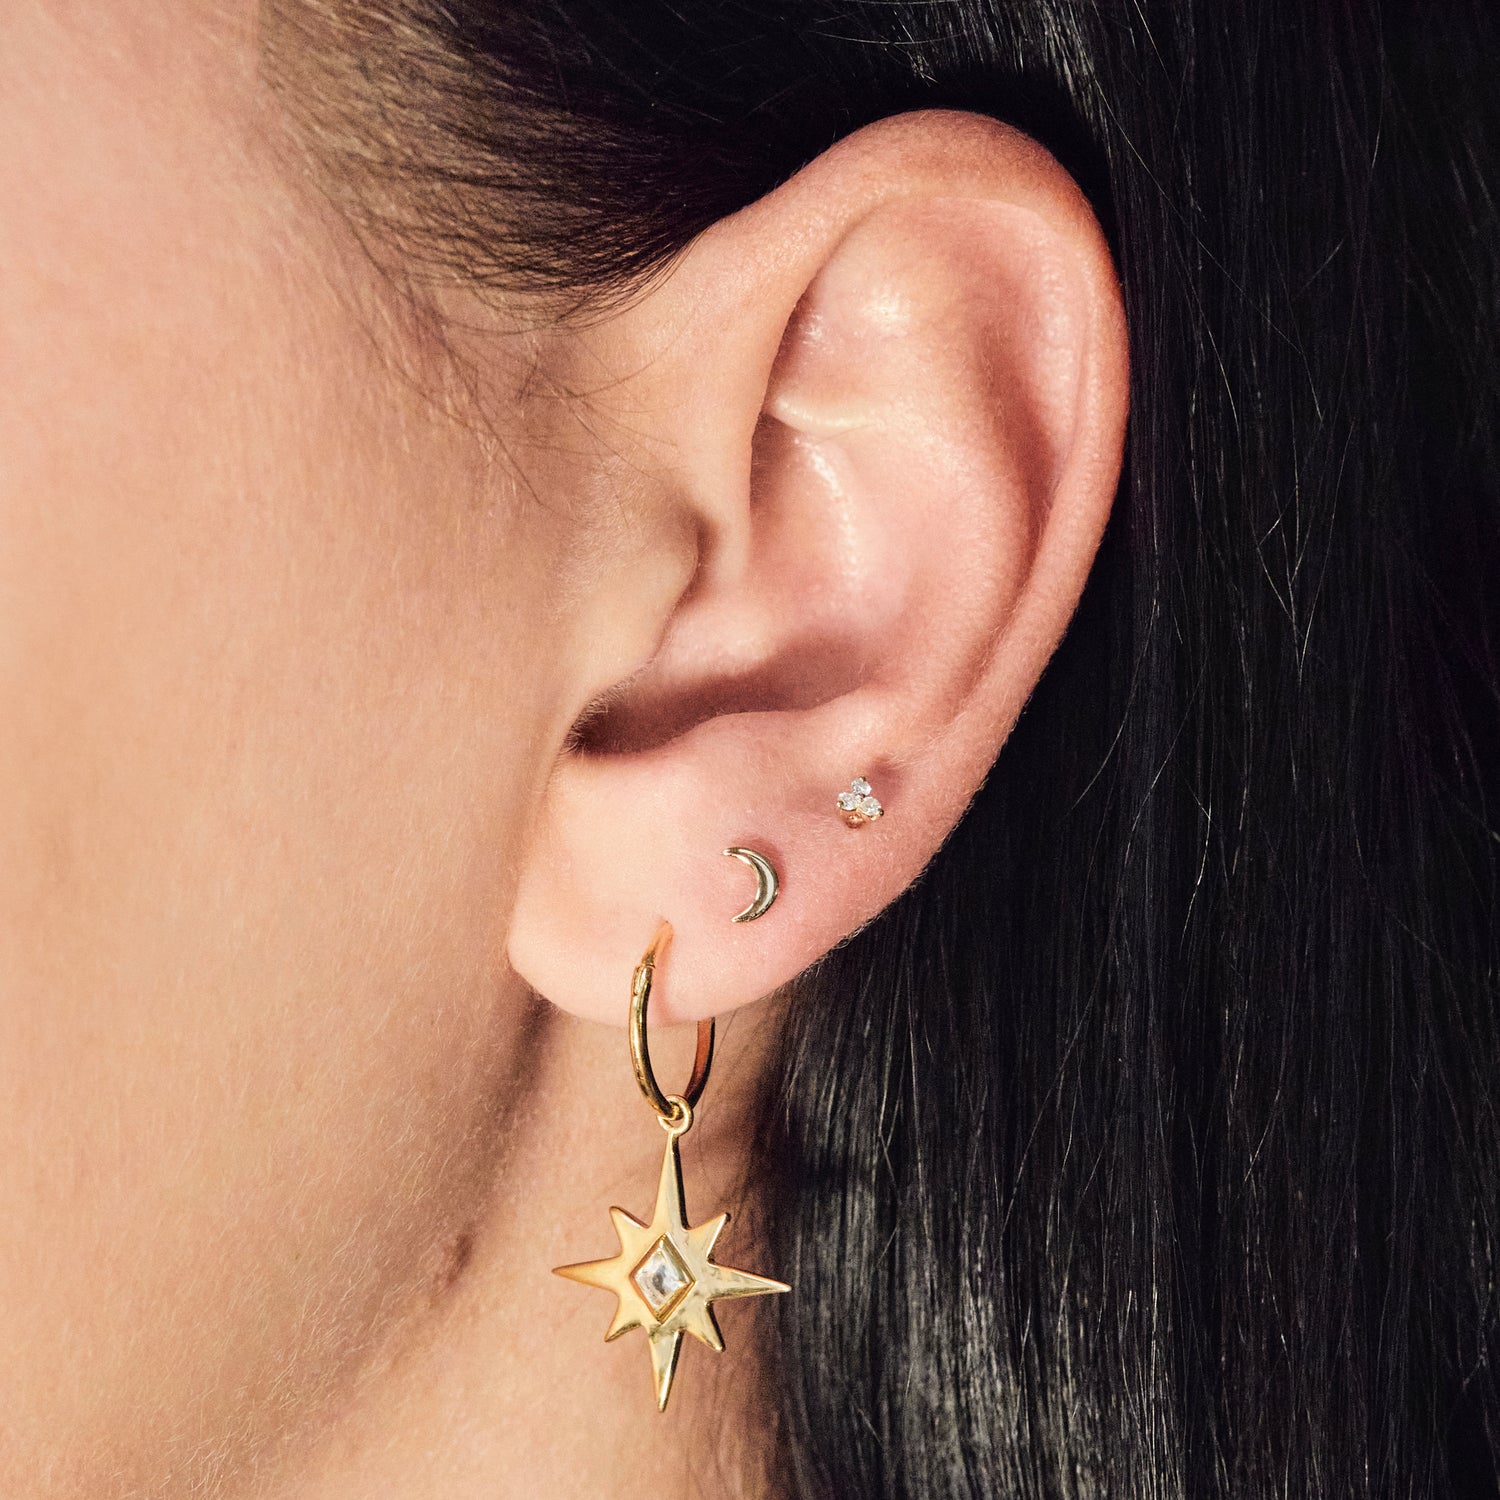 Crescent Moon Single Earring In 9k Solid Gold - Earrings - Carrie Elizabeth